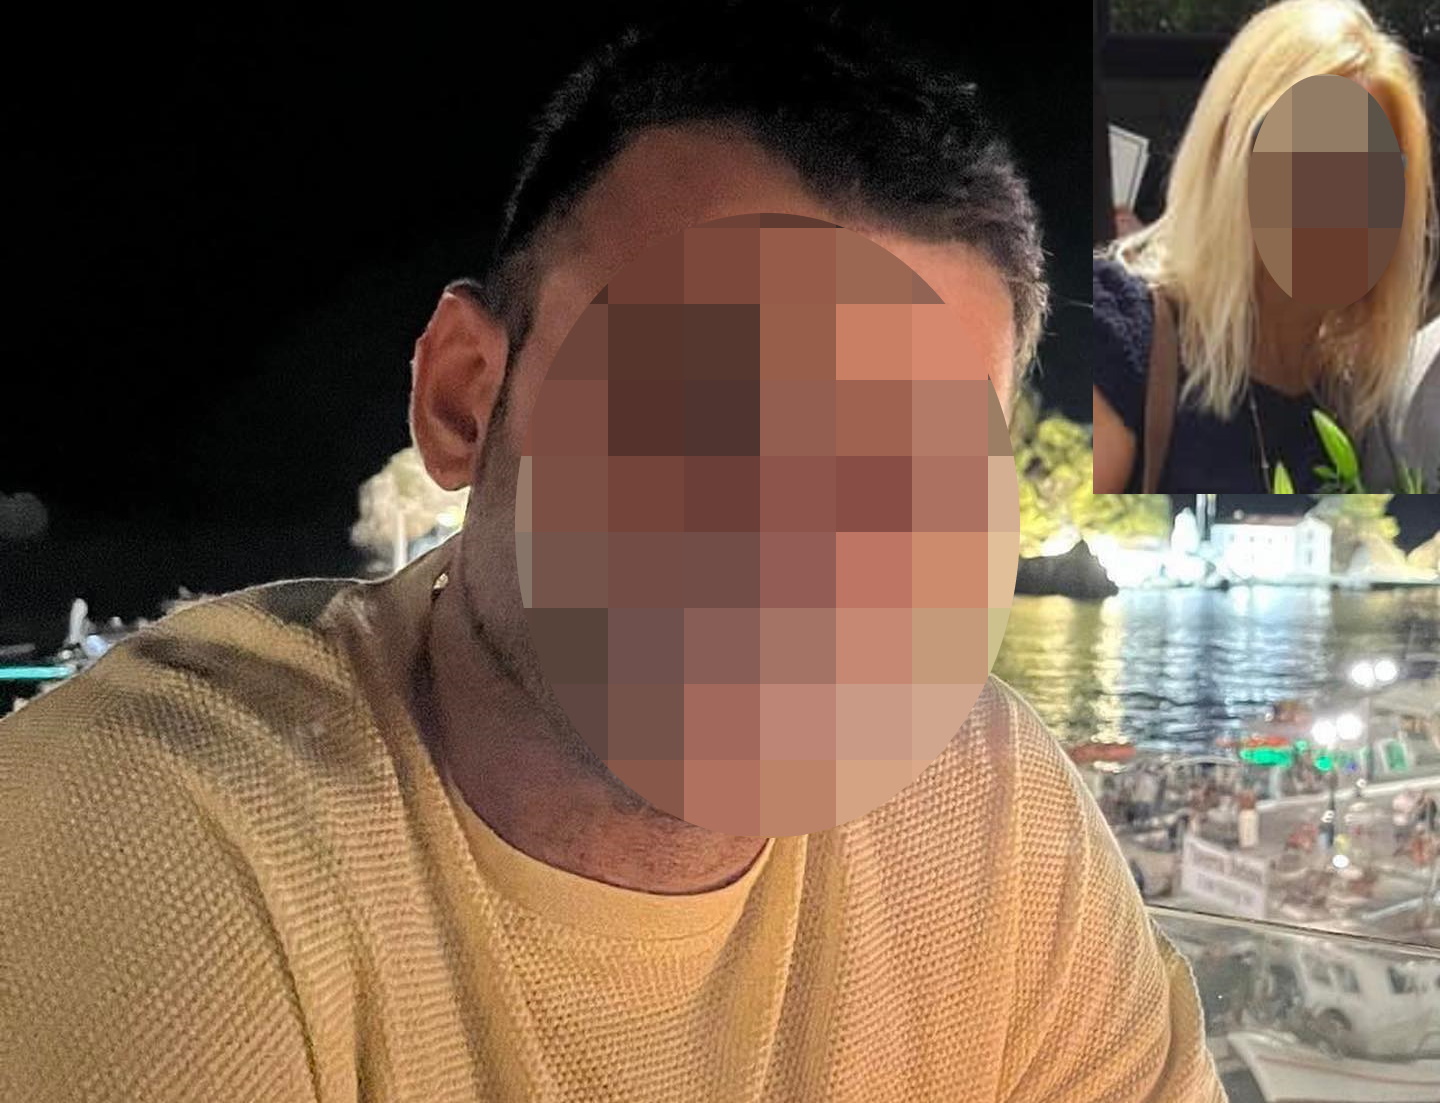 Θεσσαλονίκη: Σκότωσε τη μητέρα του με κουζινομάχαιρο – Νέα στοιχεία για τη δολοφονία